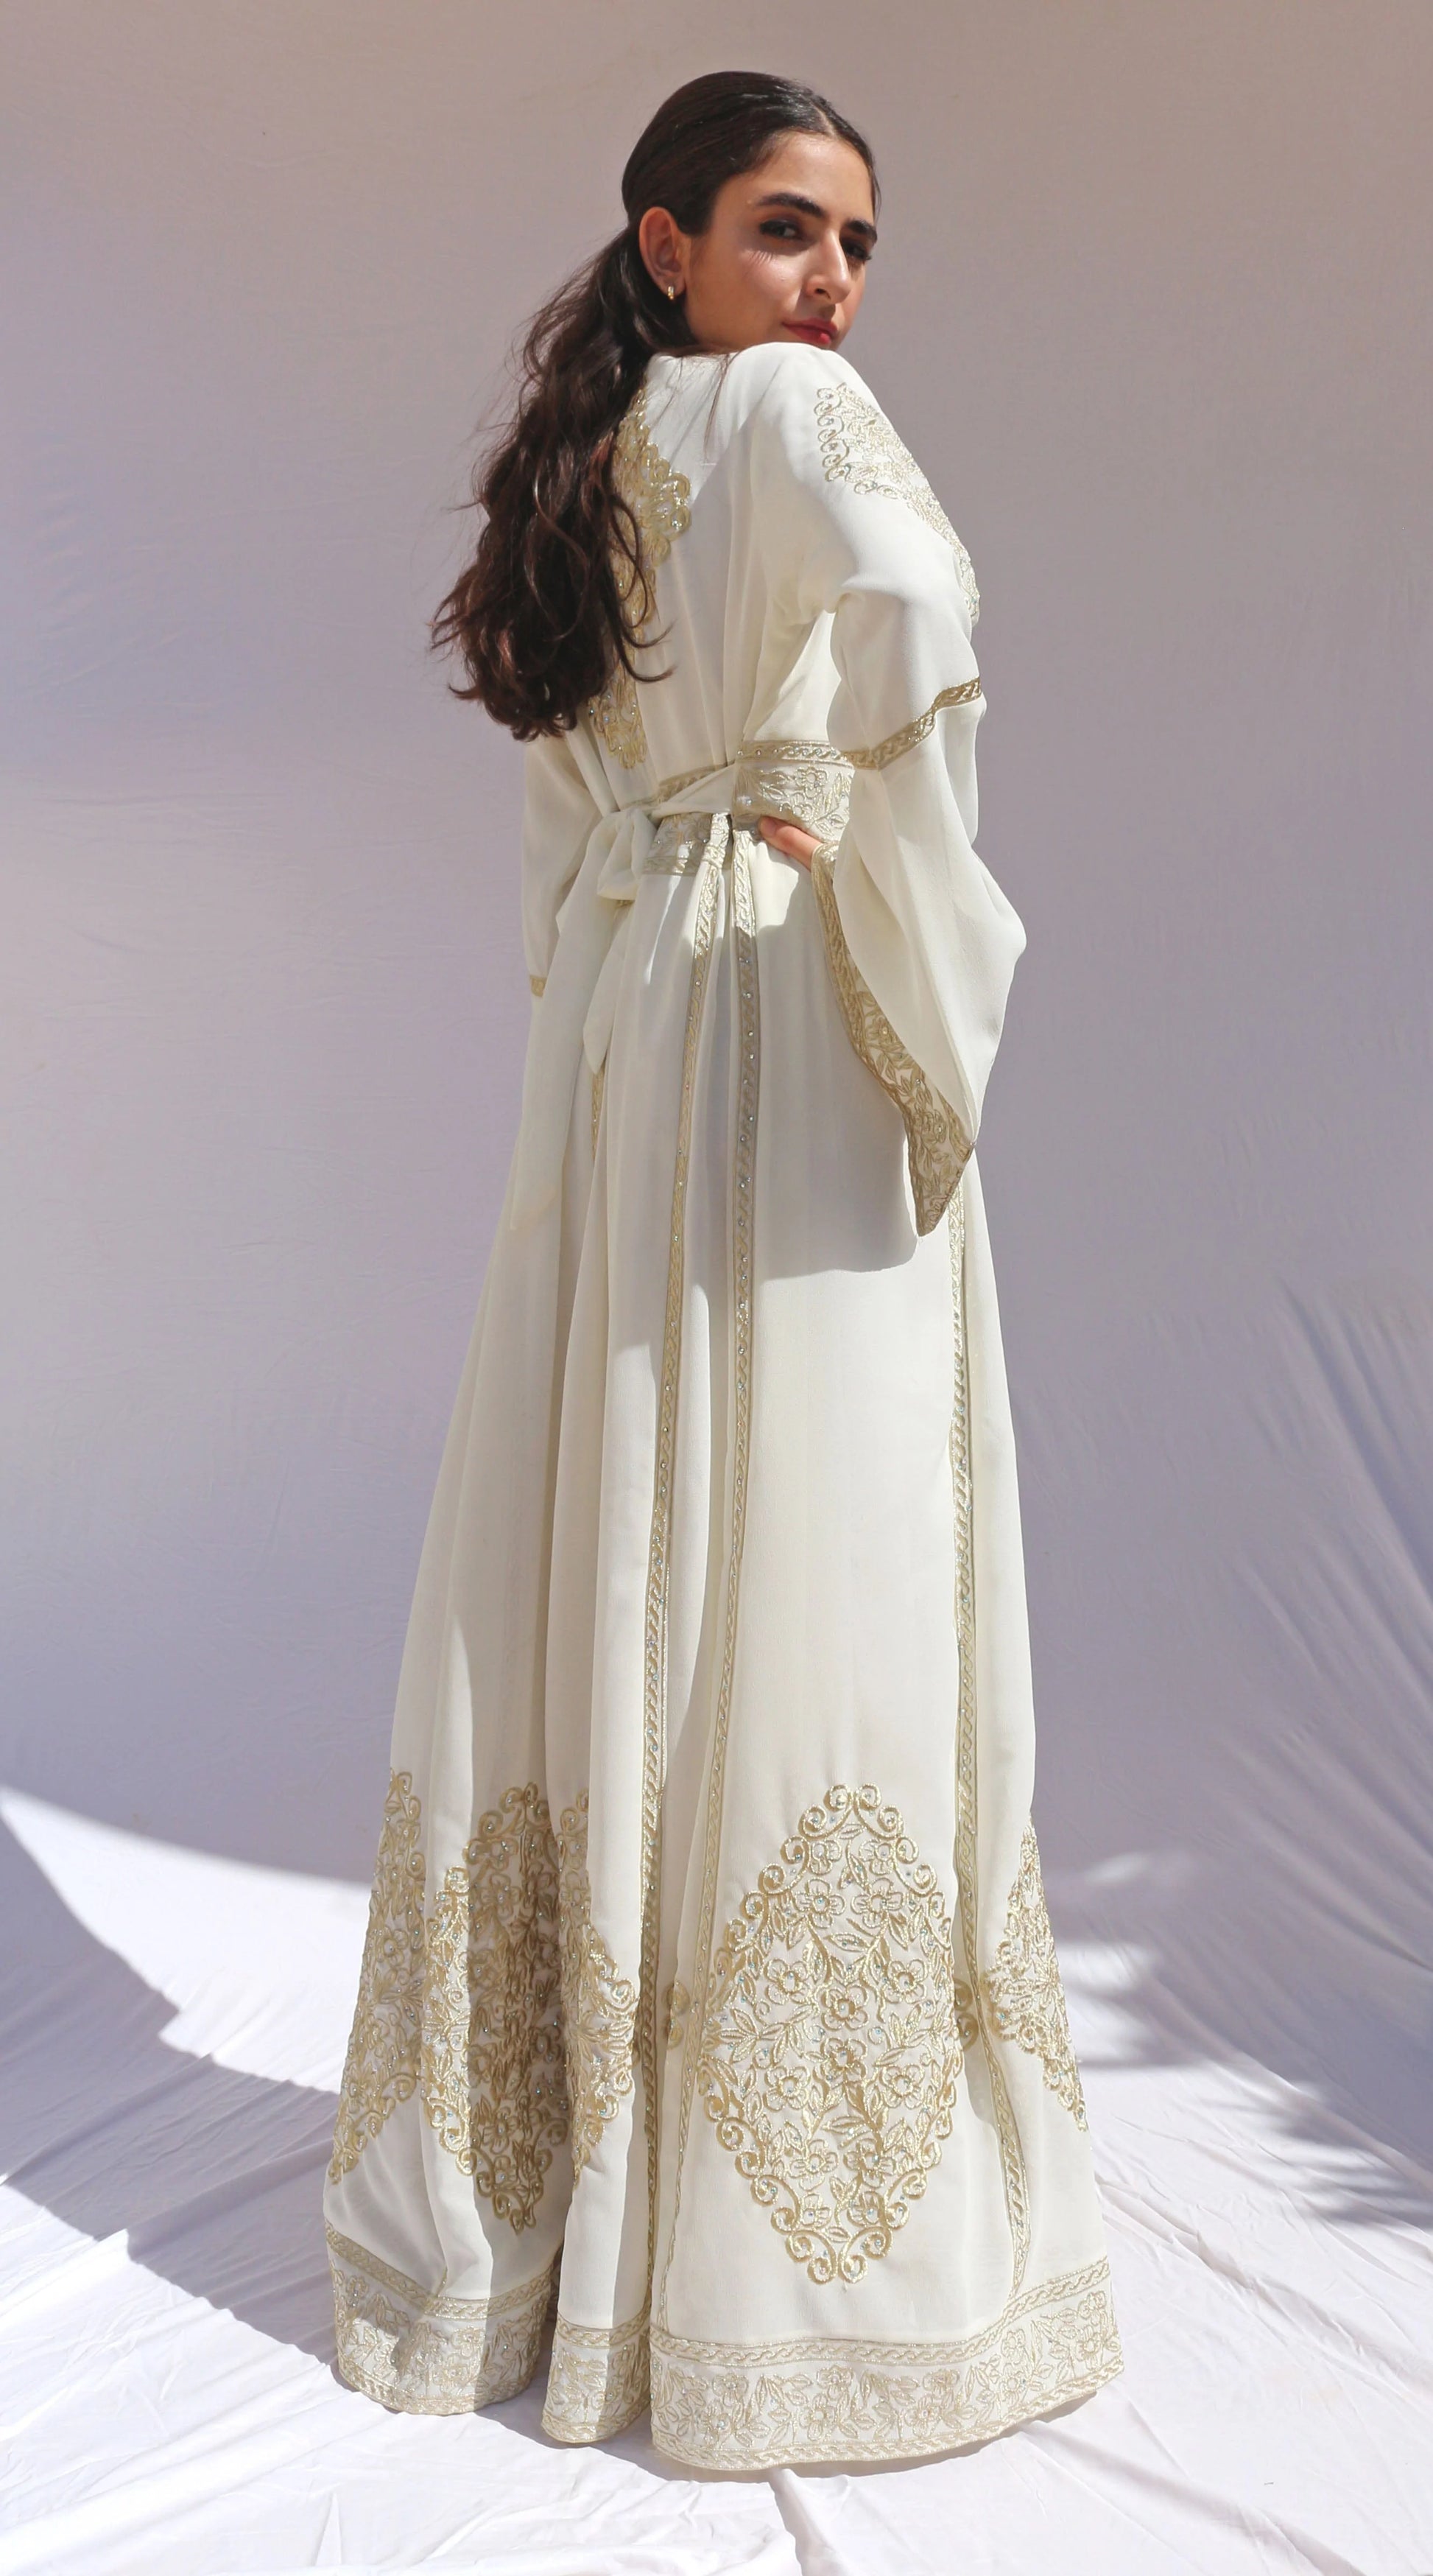 Arabian Princess Bridal Dress Deerah